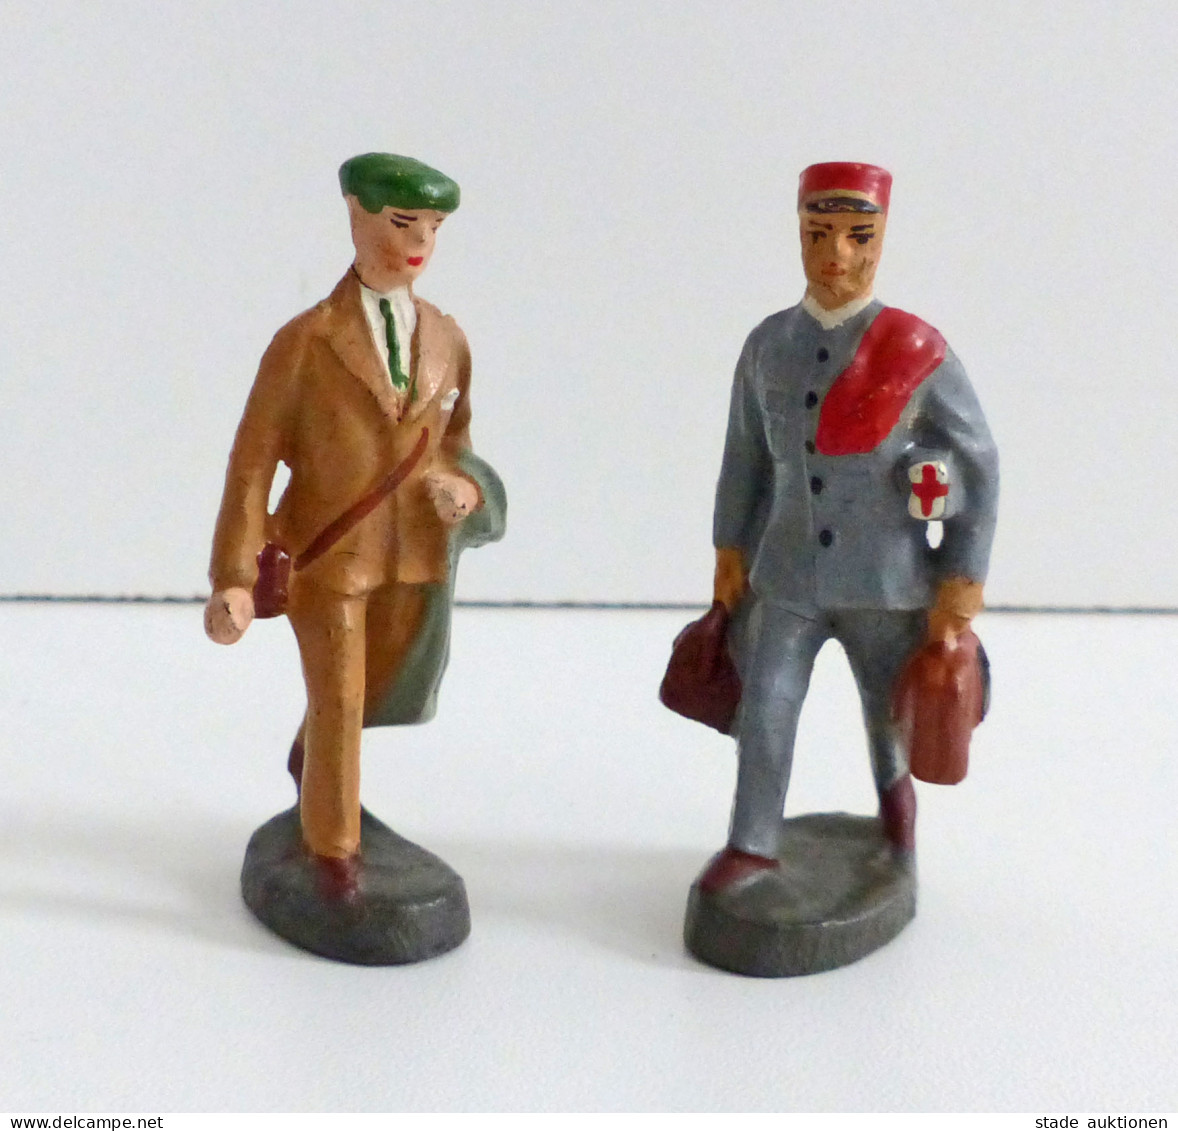 Spielzeug Elastolin 2 Figuren Sanitäter Und Tourist Aus Den 1930er Jahren Ca. 6cm Hoch I-II Jouet - Spielzeug & Spiele